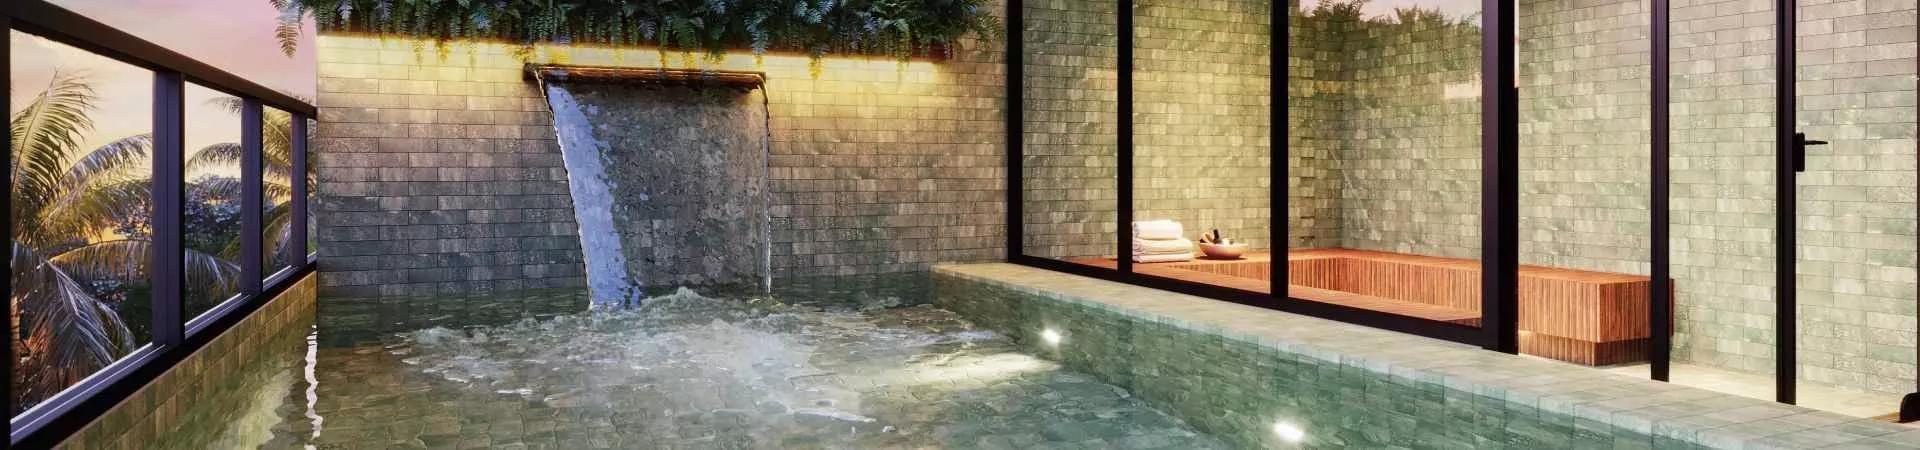 Piscina e sauna do Alt 65 Home Design